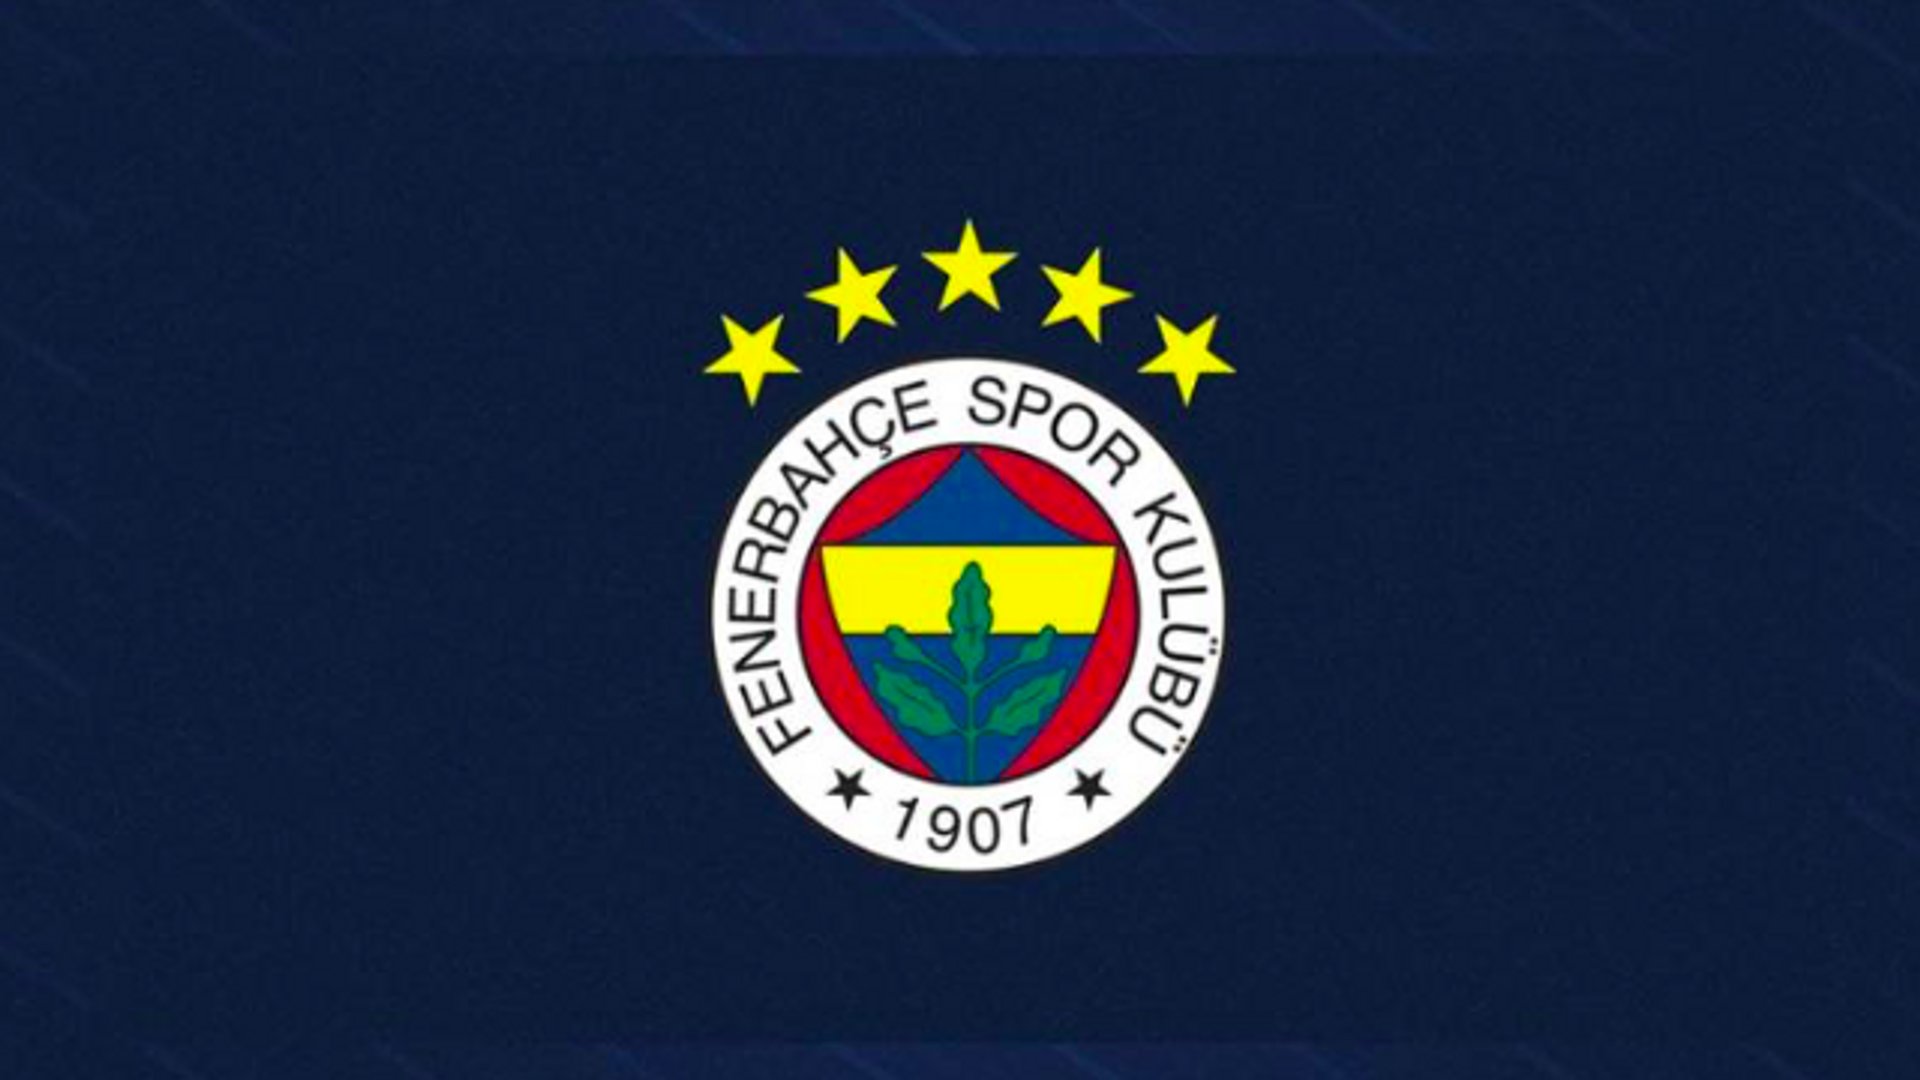 Fenerbahçe’den 5 yıldız açıklaması: Gelecek sezondan itibaren 5 yıldızlı arma Kullanılacak..